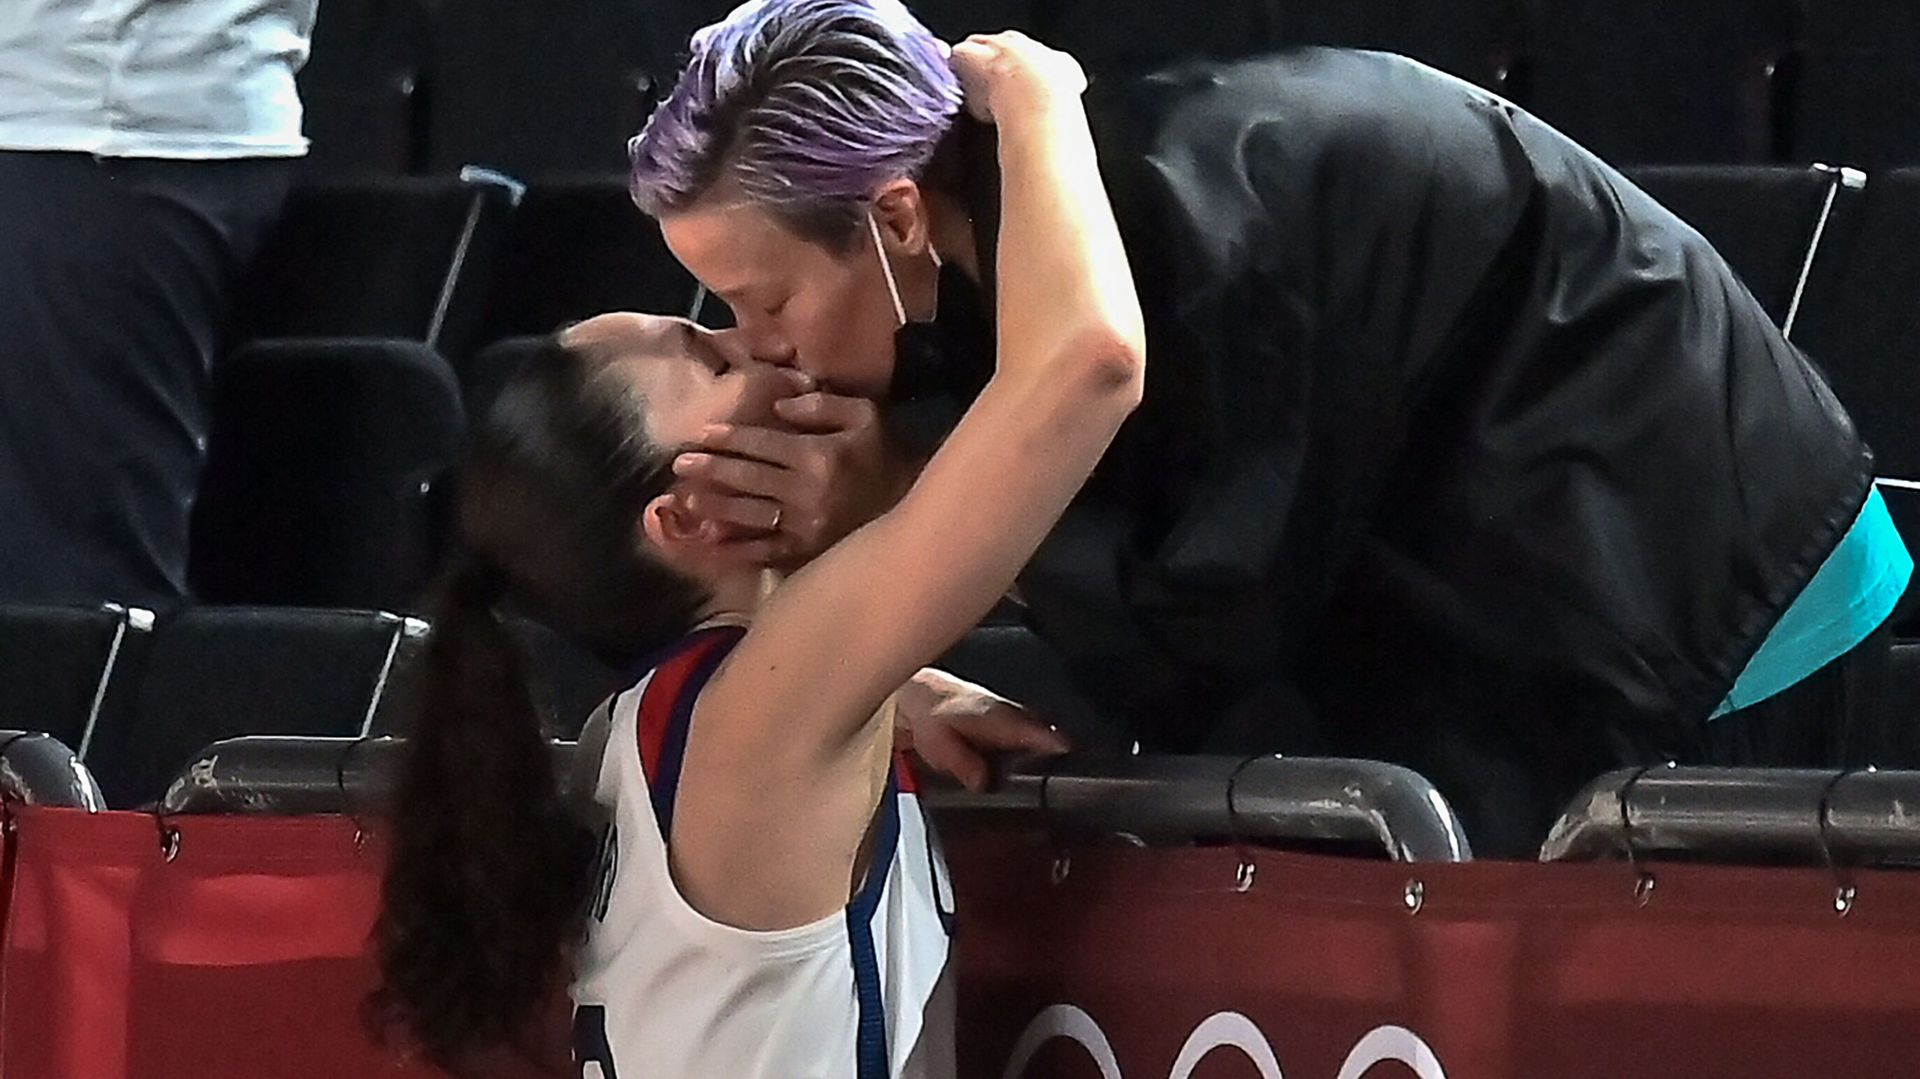 La basketteuse Sue Bird embrasse sa partenaire et joueuse de football américaine Megan Rapinoe après la victoire des États-Unis à la fin de la finale de basketball féminin entre les États-Unis et le Japon lors des Jeux olympiques de Tokyo 2020, le 8 août 